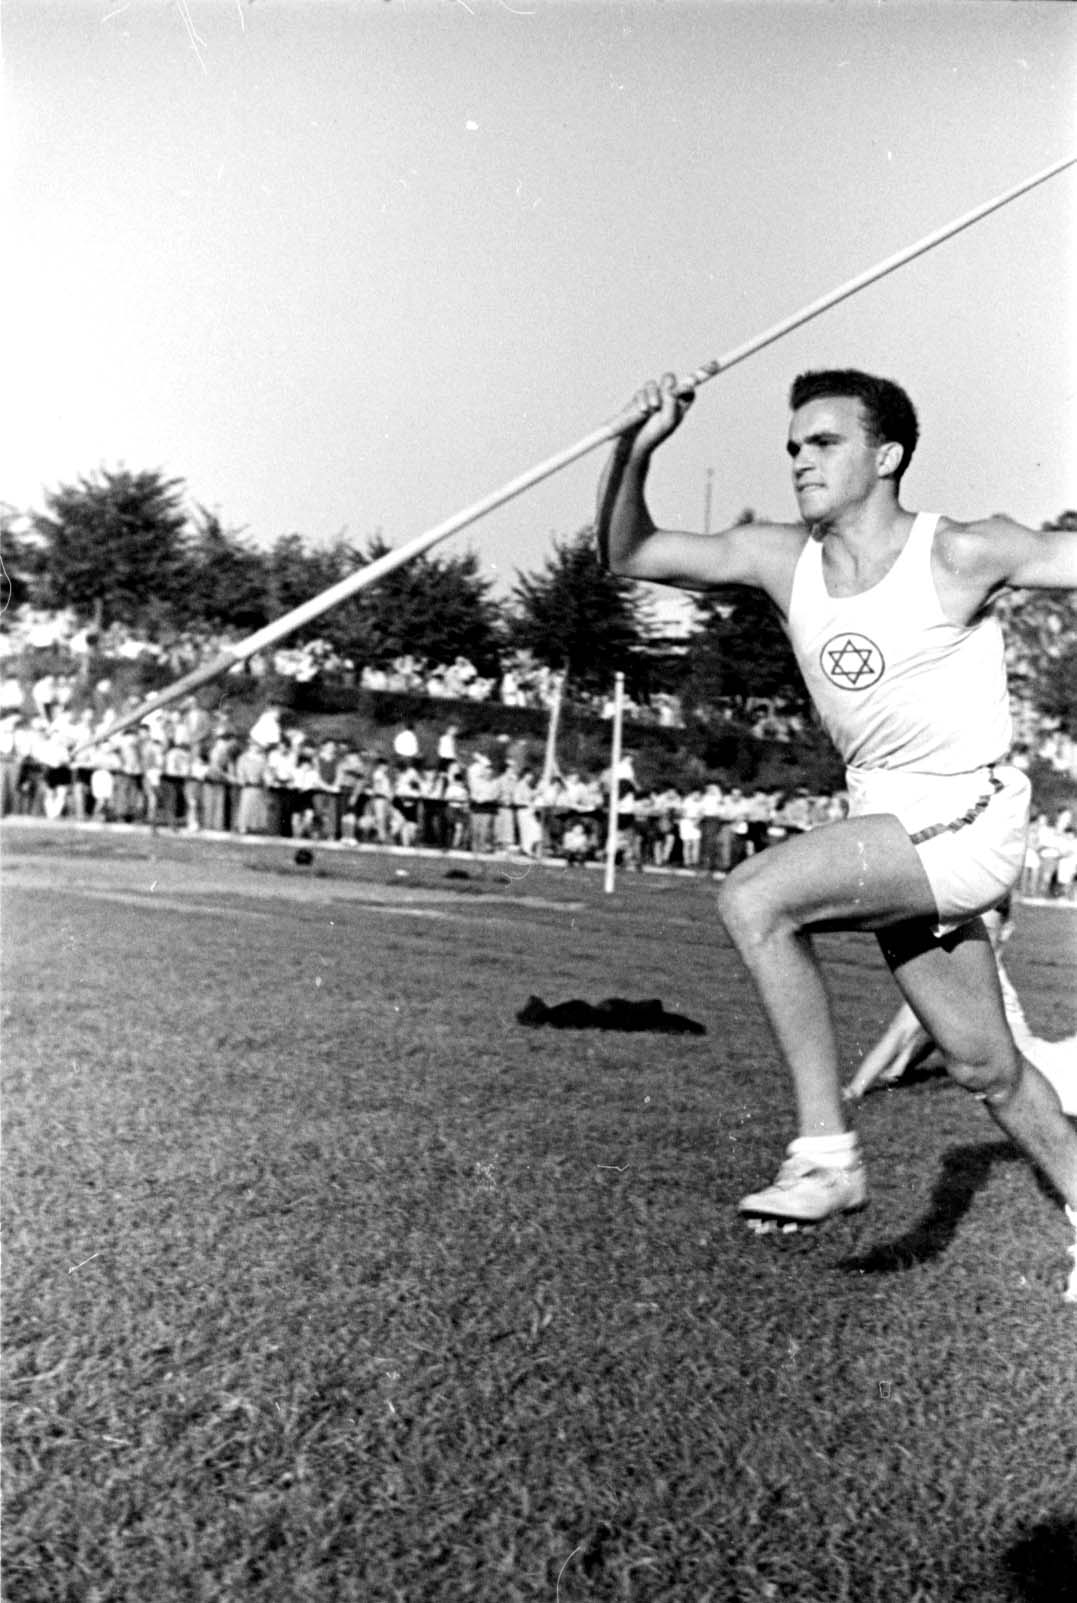 Берлин, Германия, август 1937. Состязания по метанию копья на соревнованиях «Маккаби» по легкой атлетике